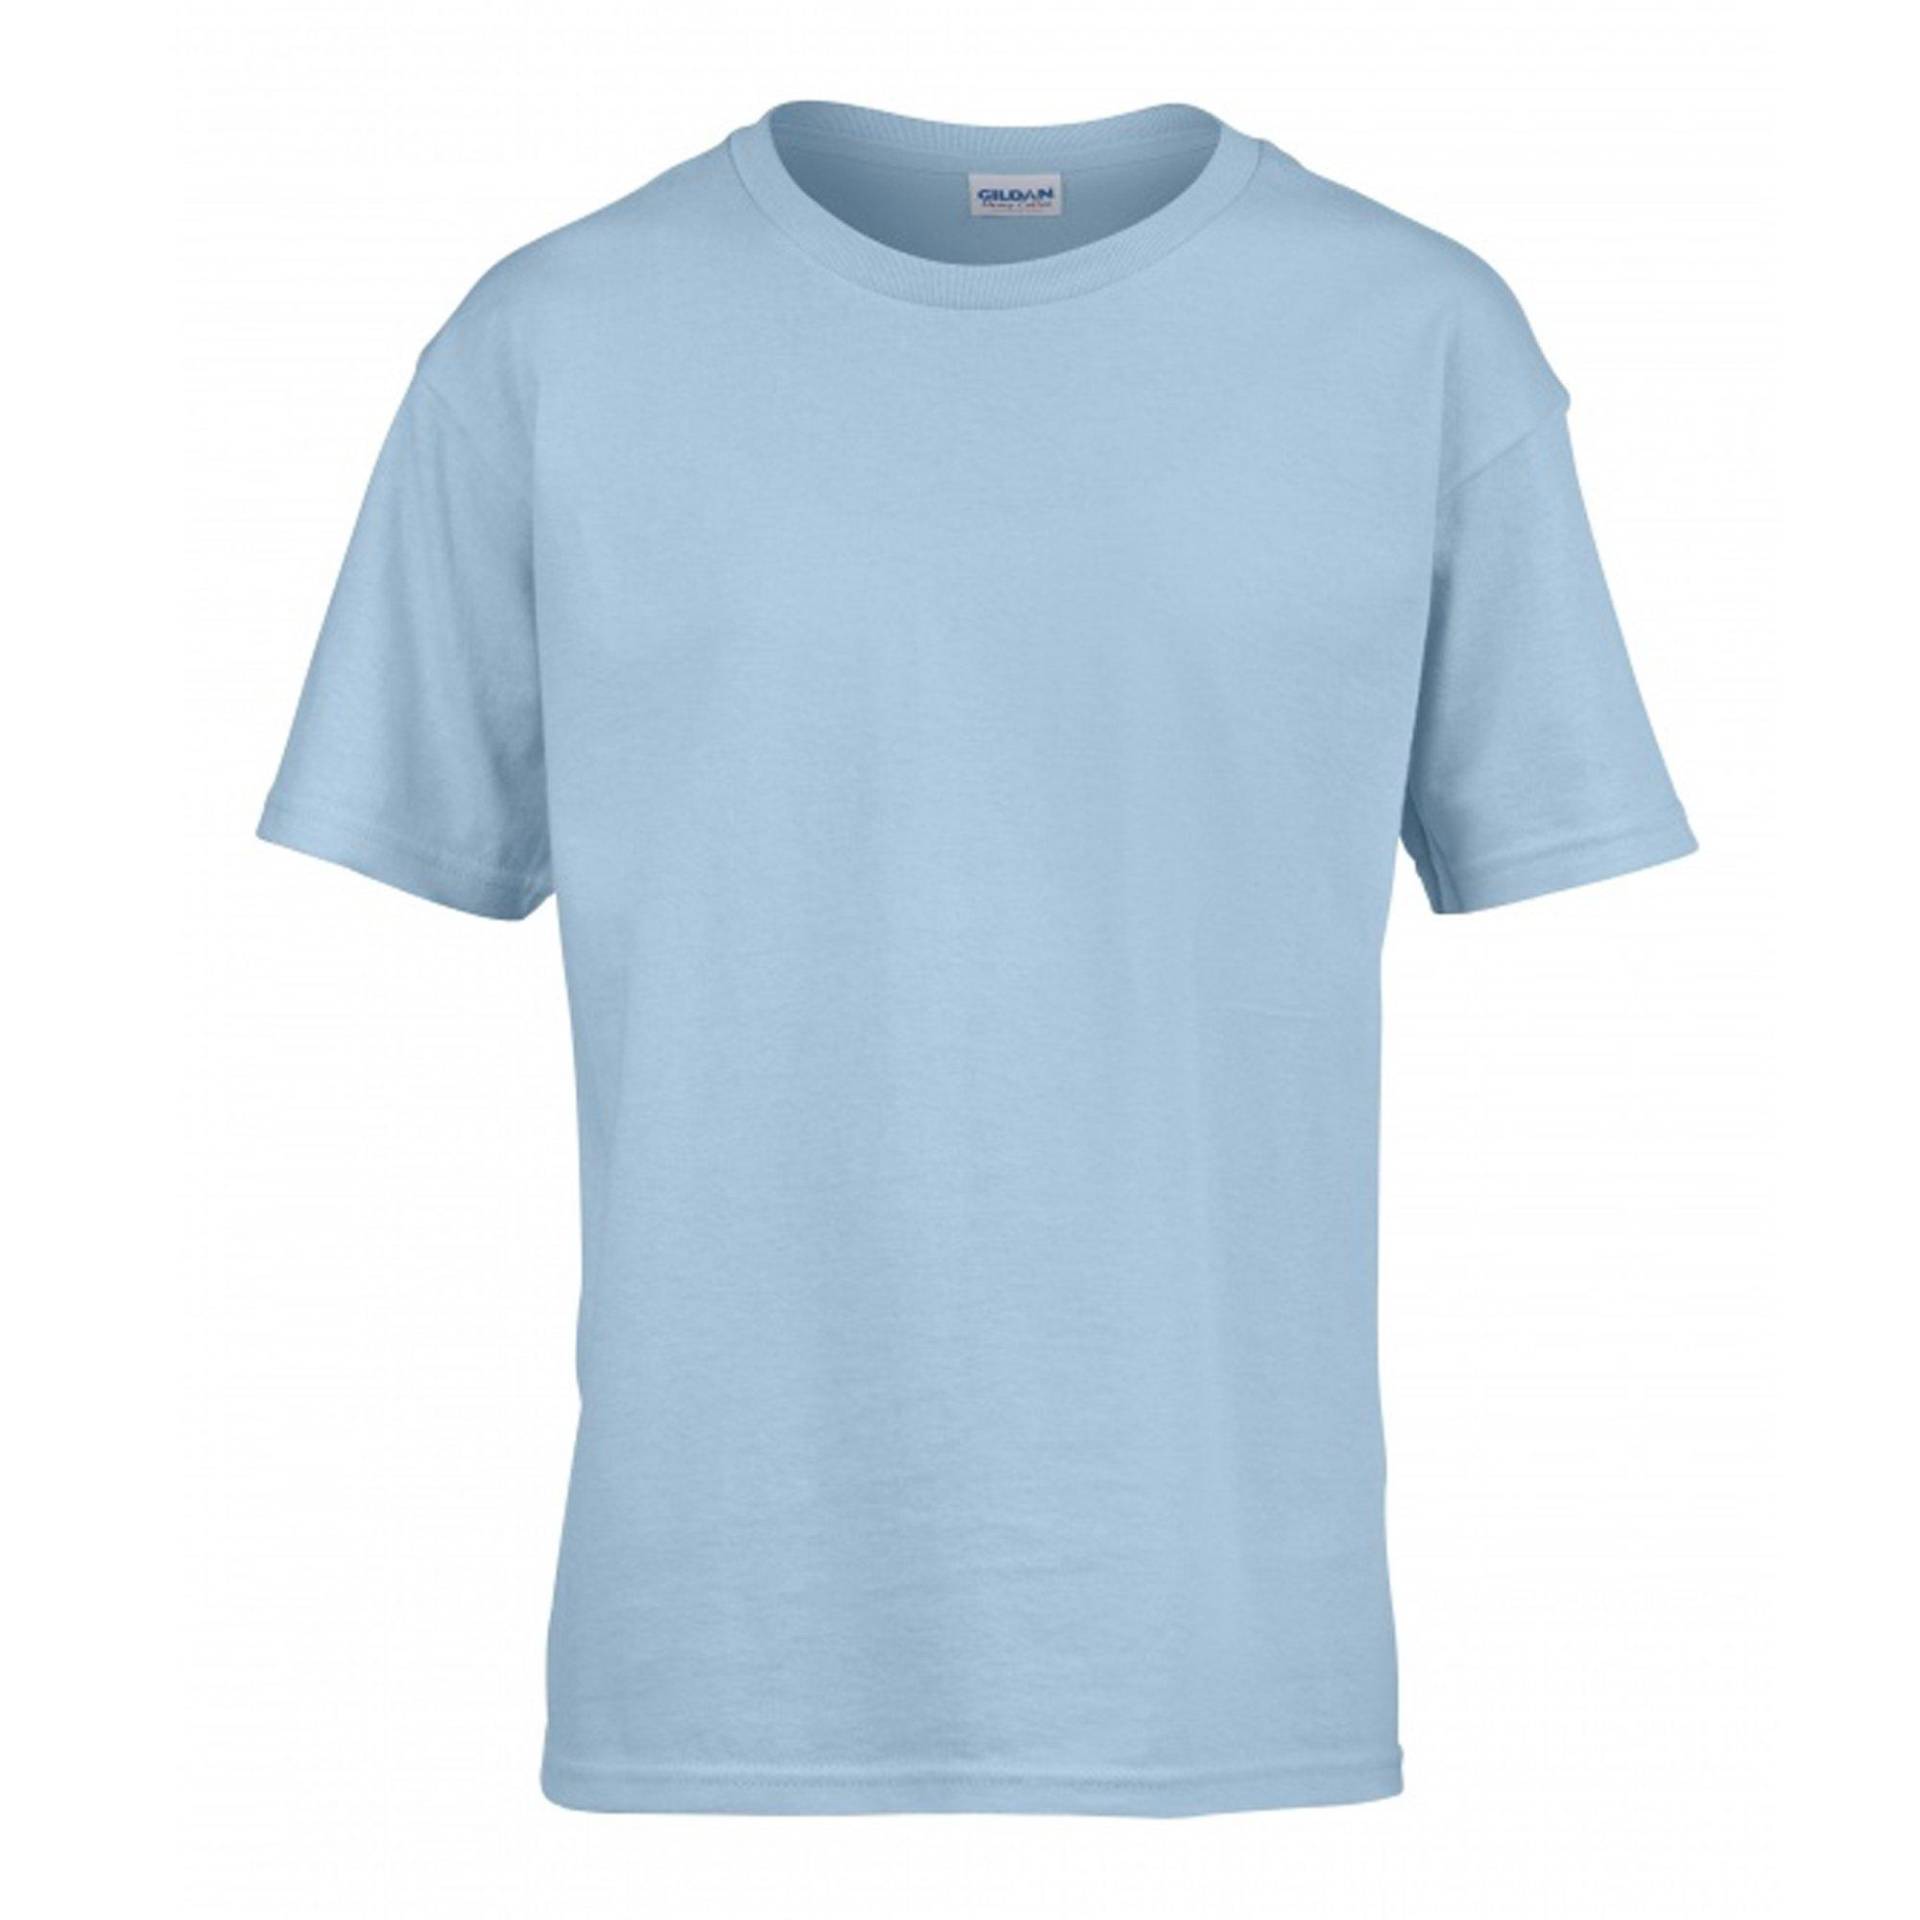 Softstyle Tshirt Herren Blau S von Gildan